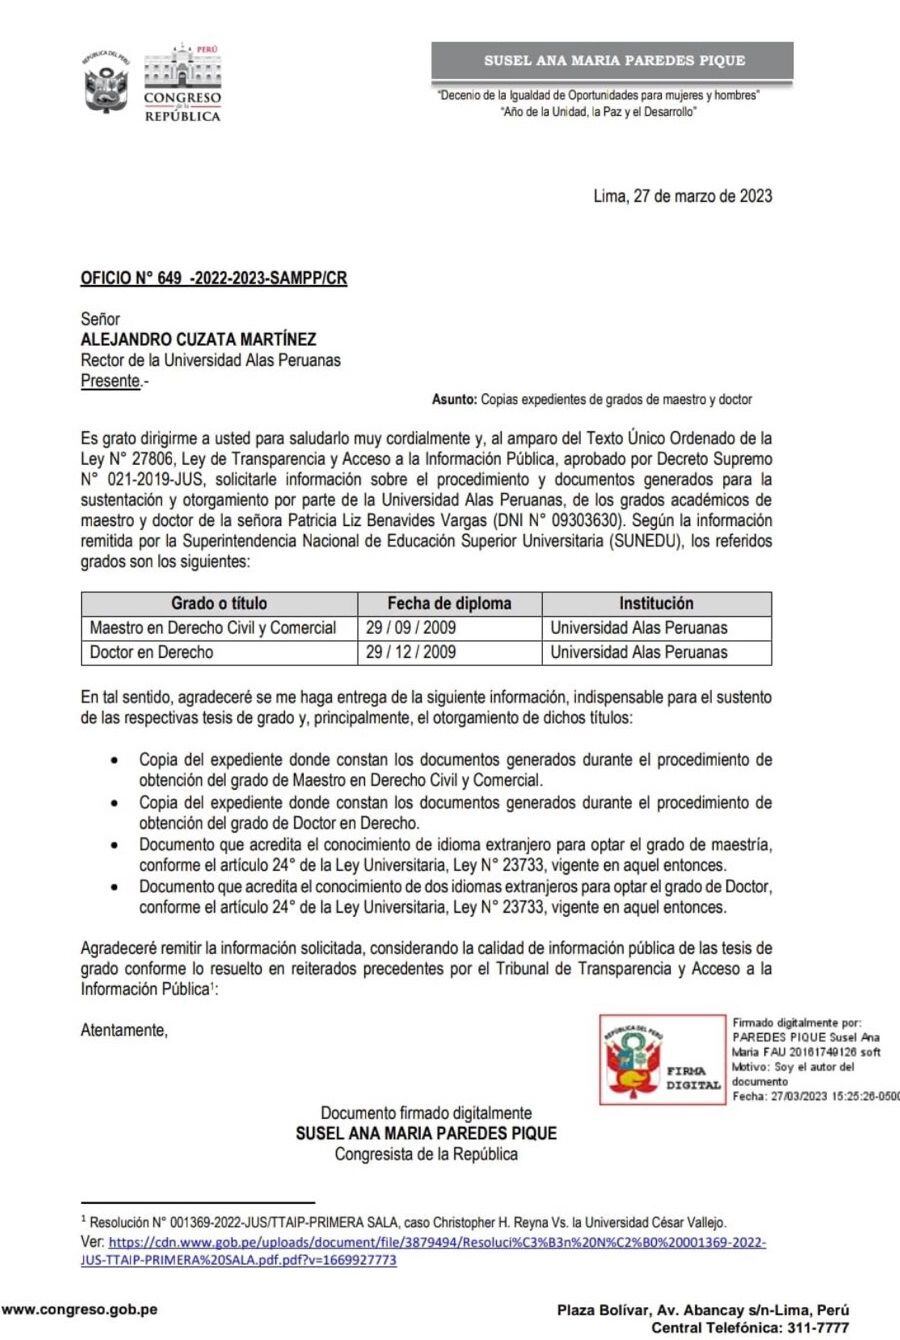 Documento de Susel Paredes sobre documentos académicos de Patricia Benavides.